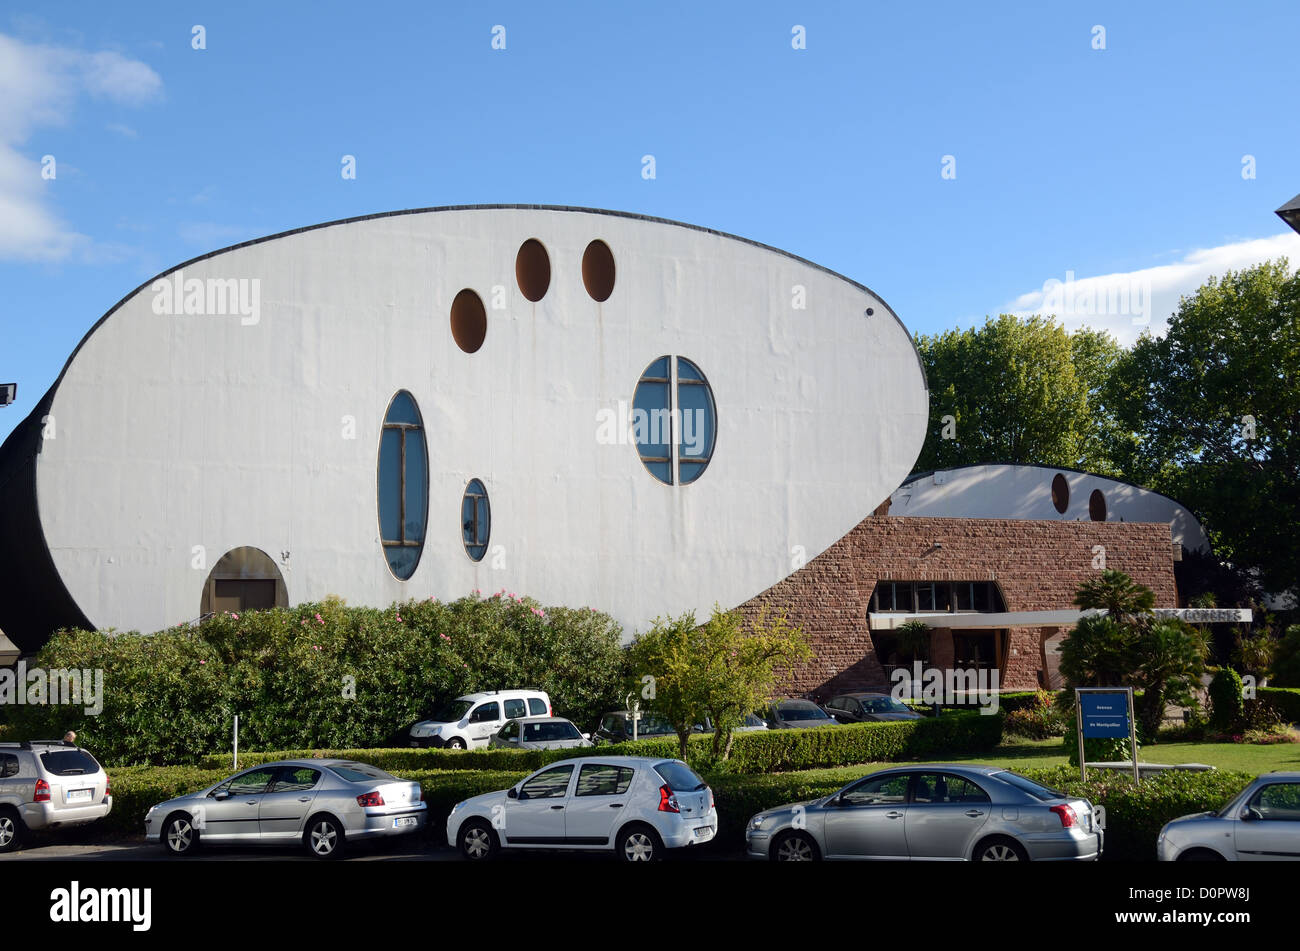 Ovale moderniste, ovale ou ovoïde Palais des Congrès (1983) par Jean Balladur à la station ou Nouvelle ville de la Grande-Motte Hérault France Banque D'Images